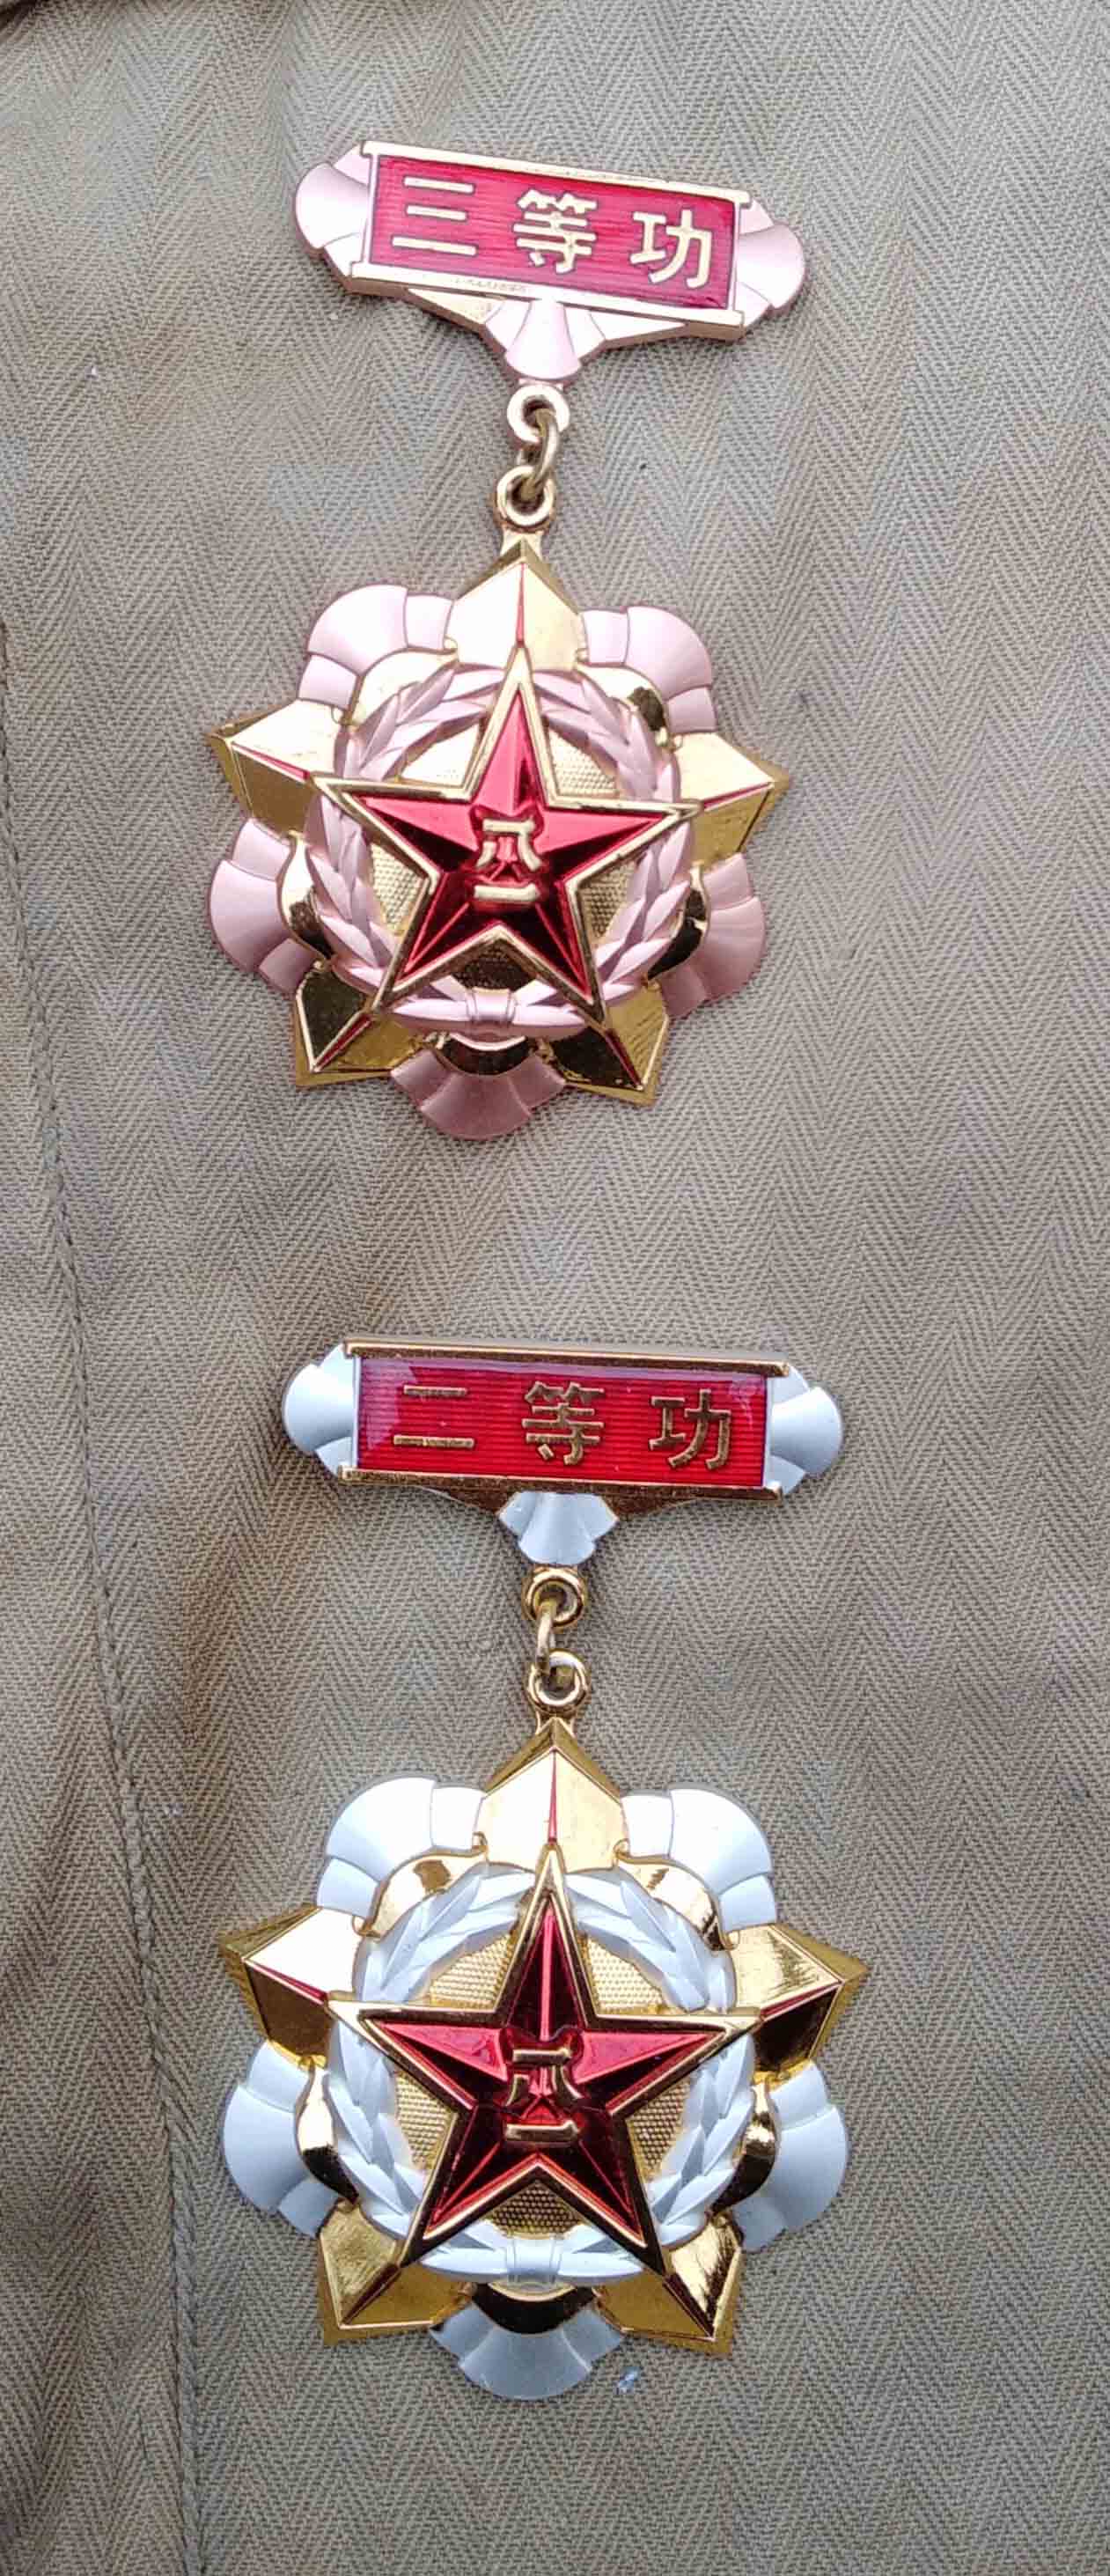 现役中国人民解放军二,三等功奖章各一枚